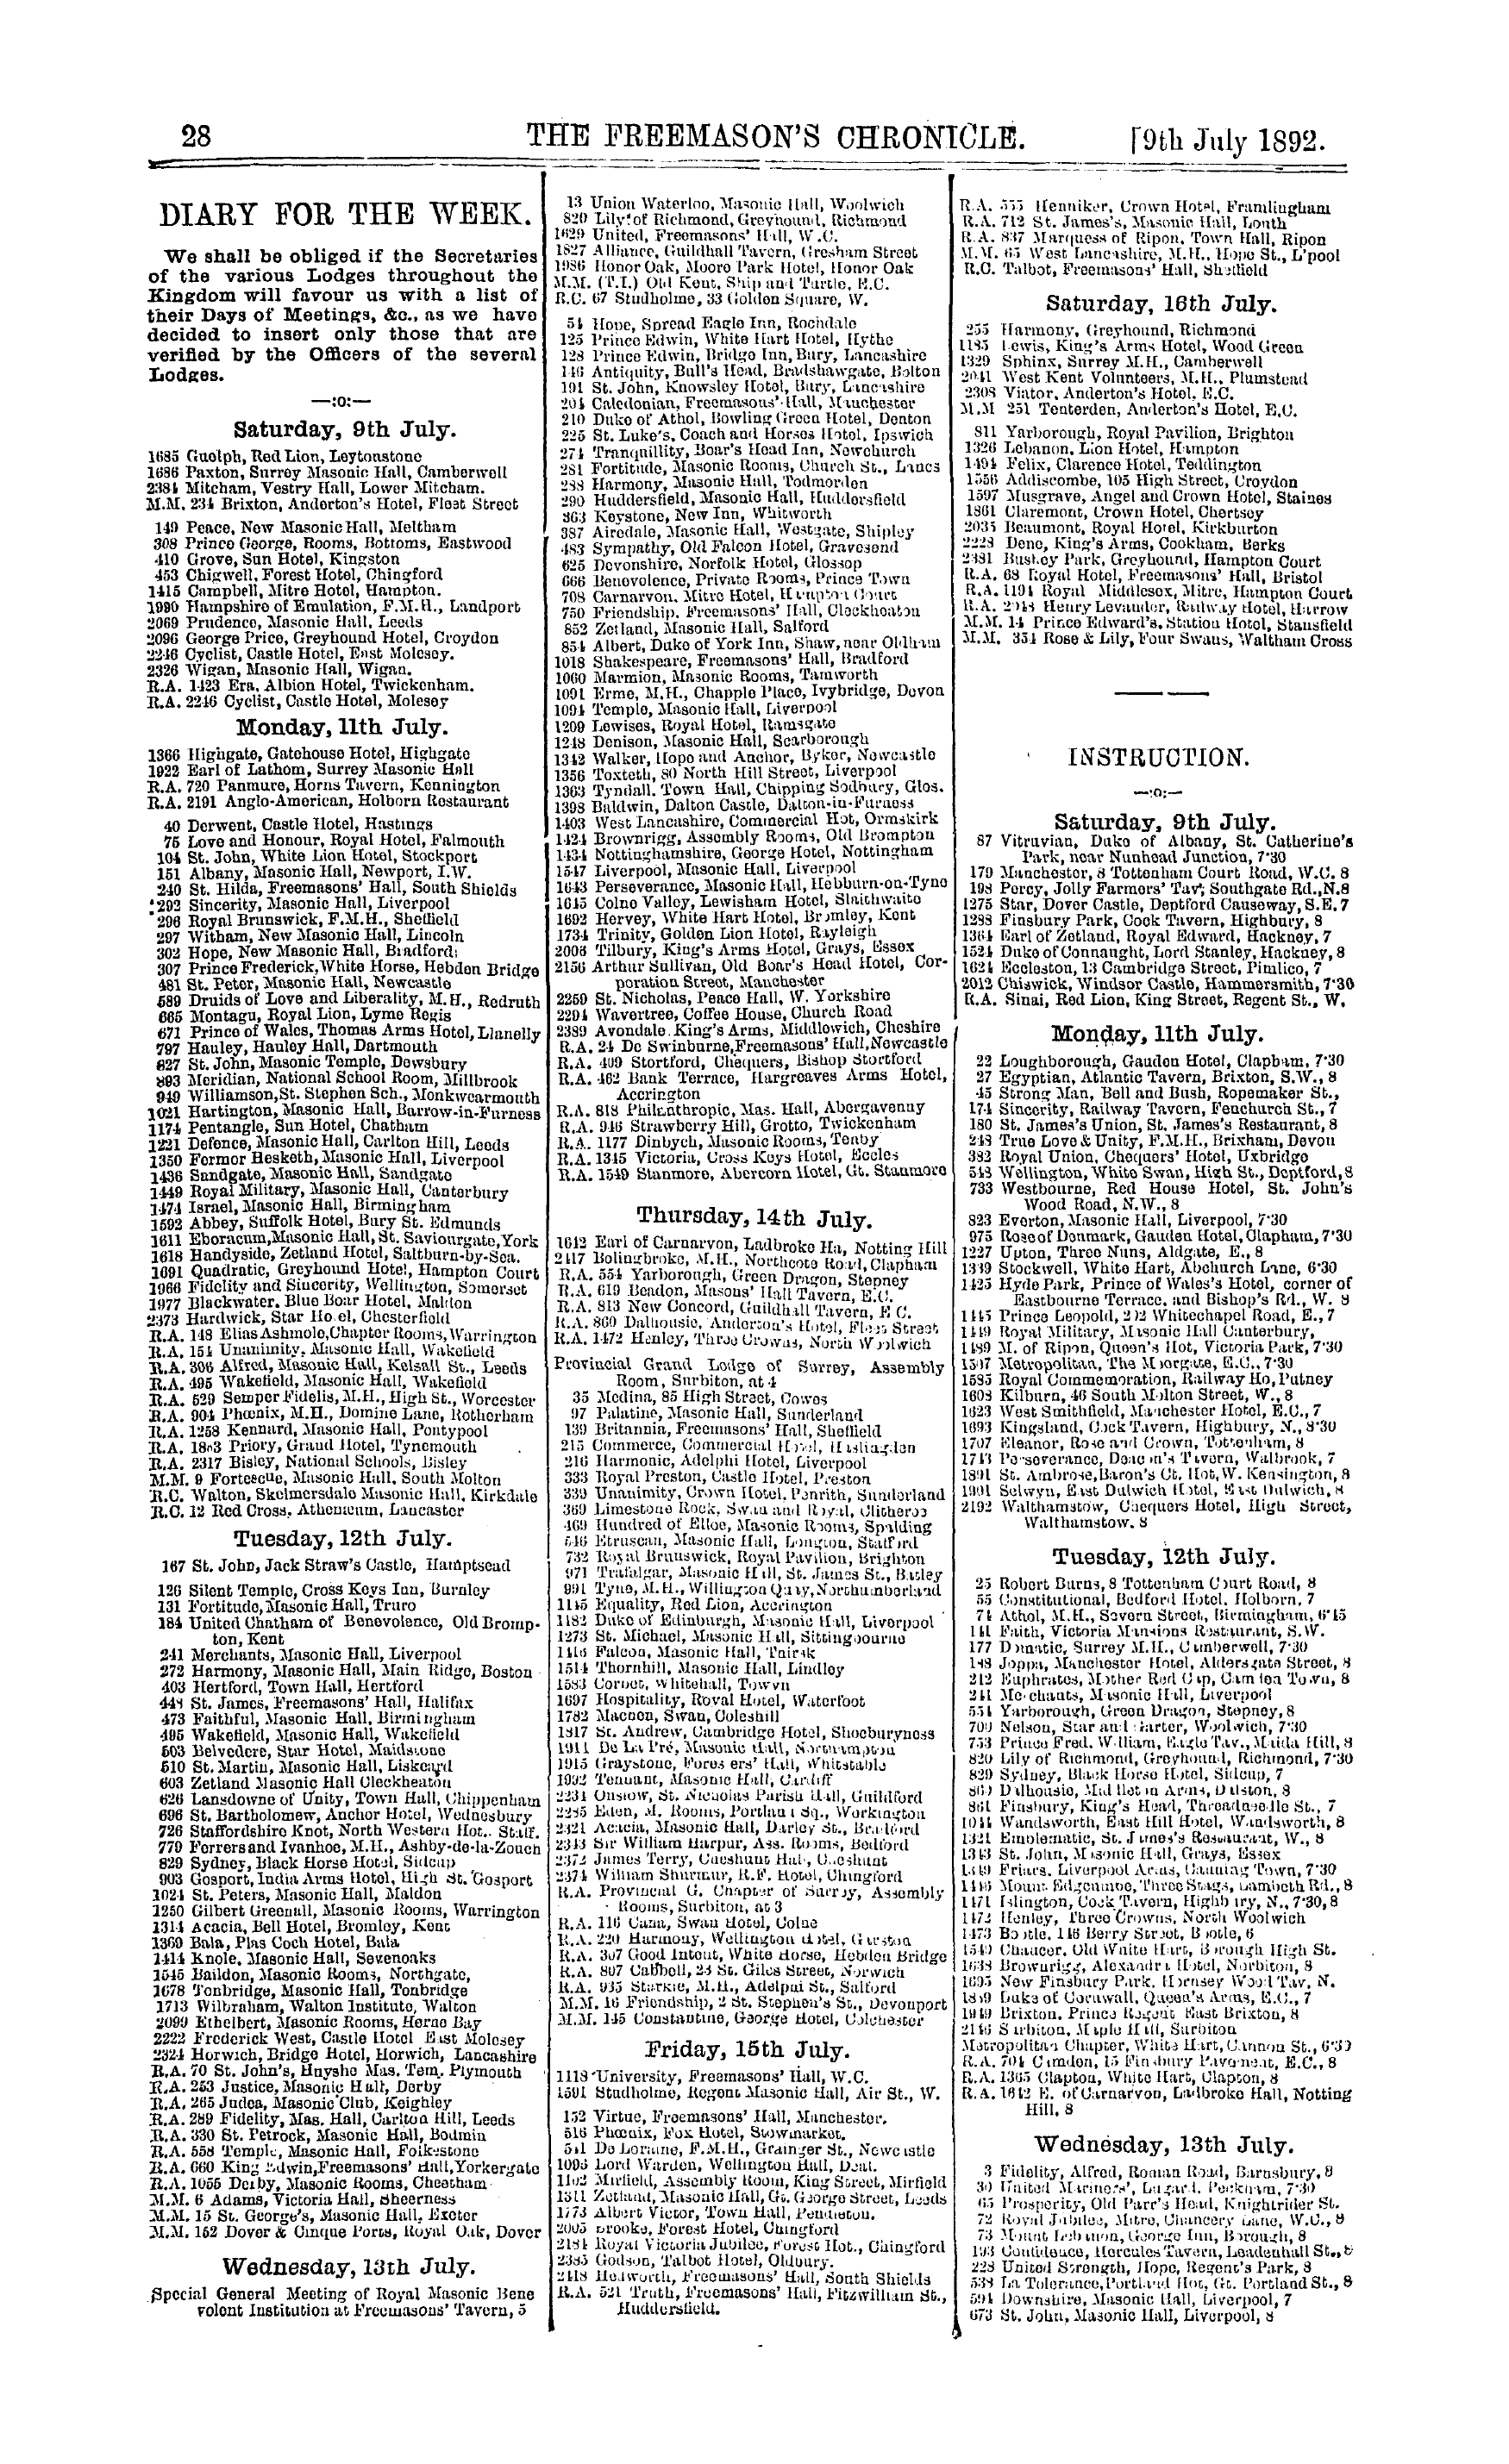 The Freemason's Chronicle: 1892-07-09 - Instruction.